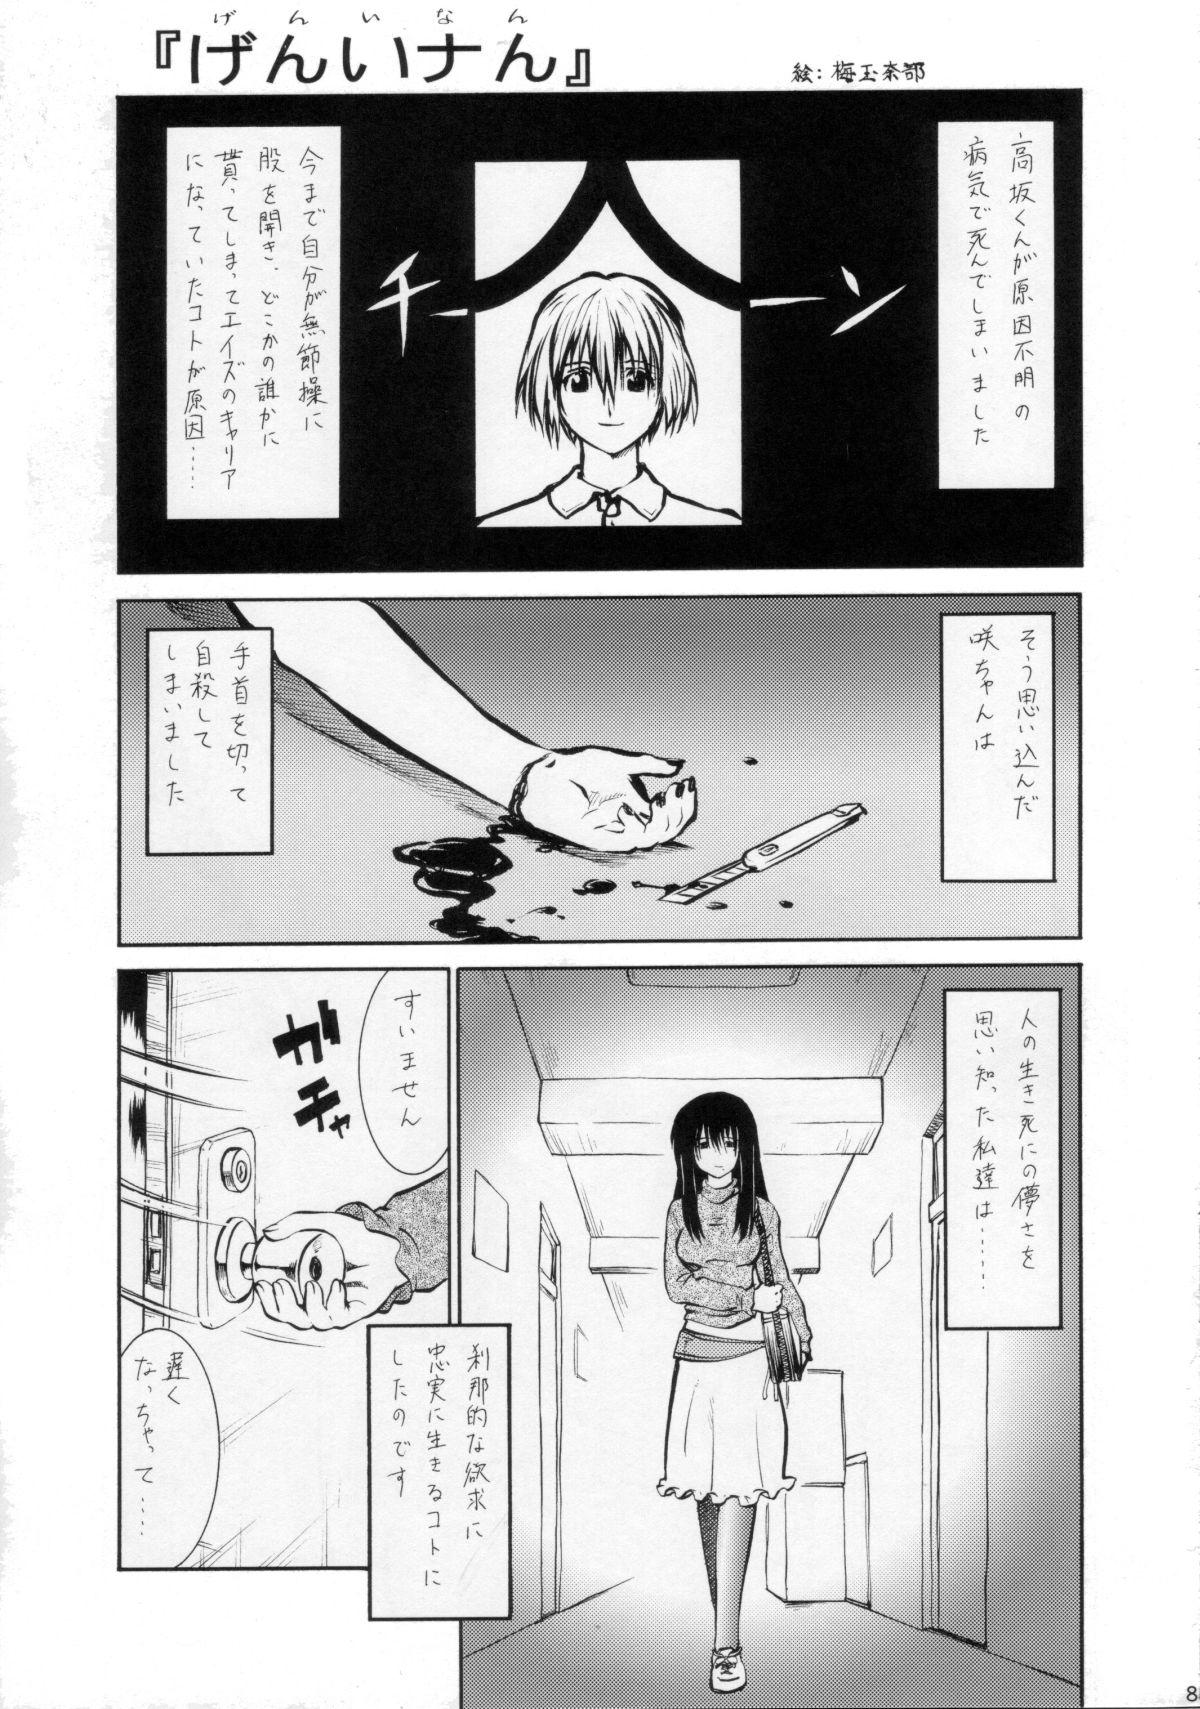 Umeta Manga Shuu 11 -nin iru! 82